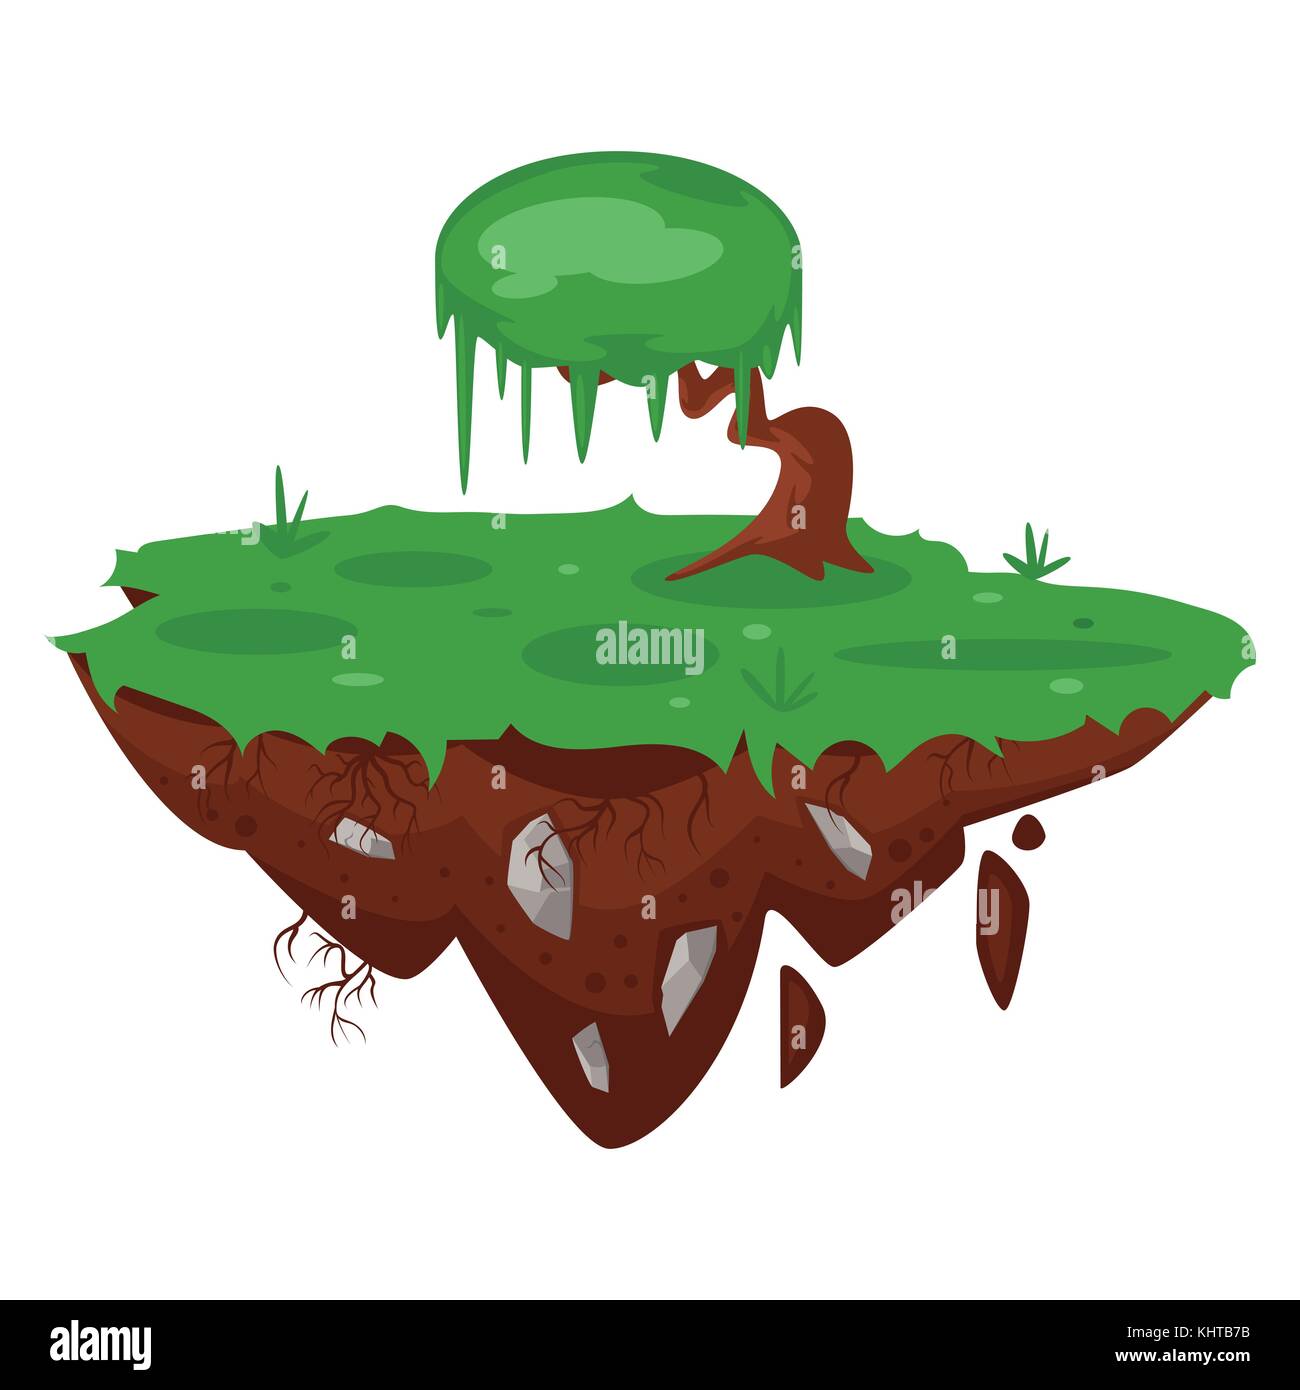 Vector cartoon illustration de jeu l'île Green, isolé sur fond blanc. jeu utilisateur (GUI) pour les jeux vidéos, l'ordinateur ou des web Illustration de Vecteur